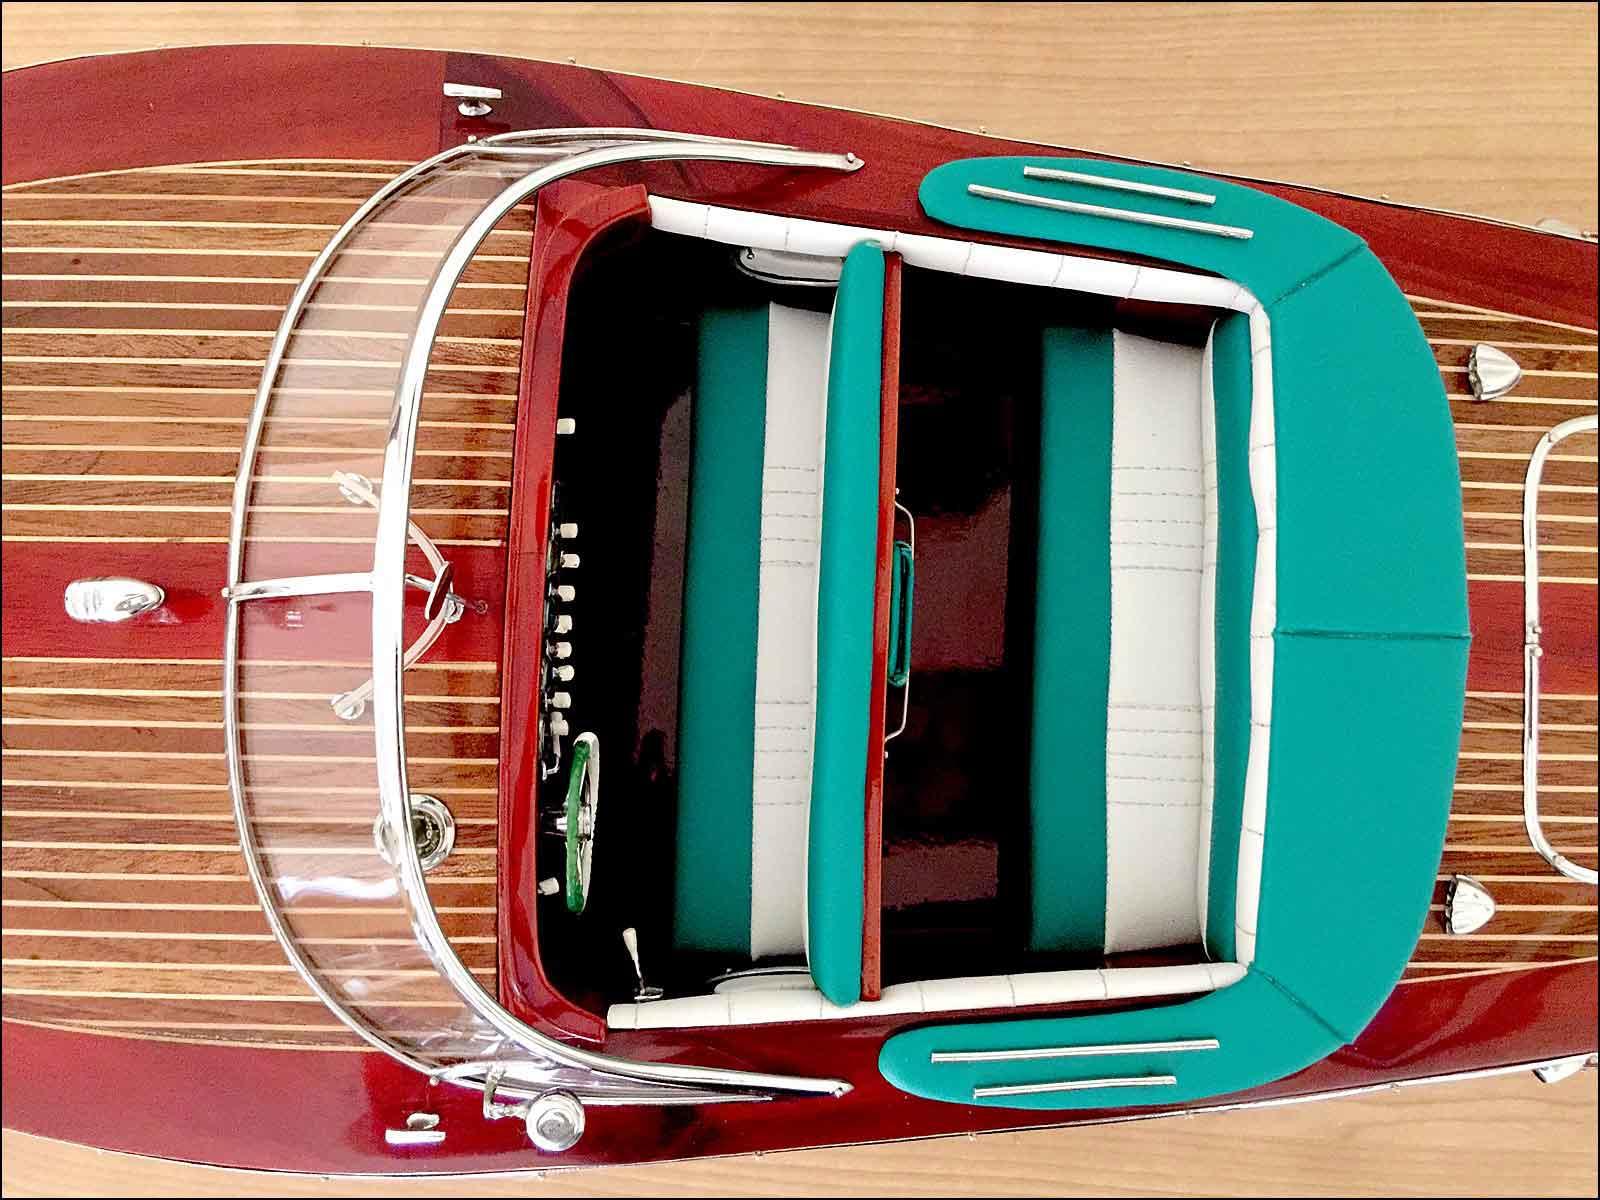 Italian speed boat Riva Ariston model